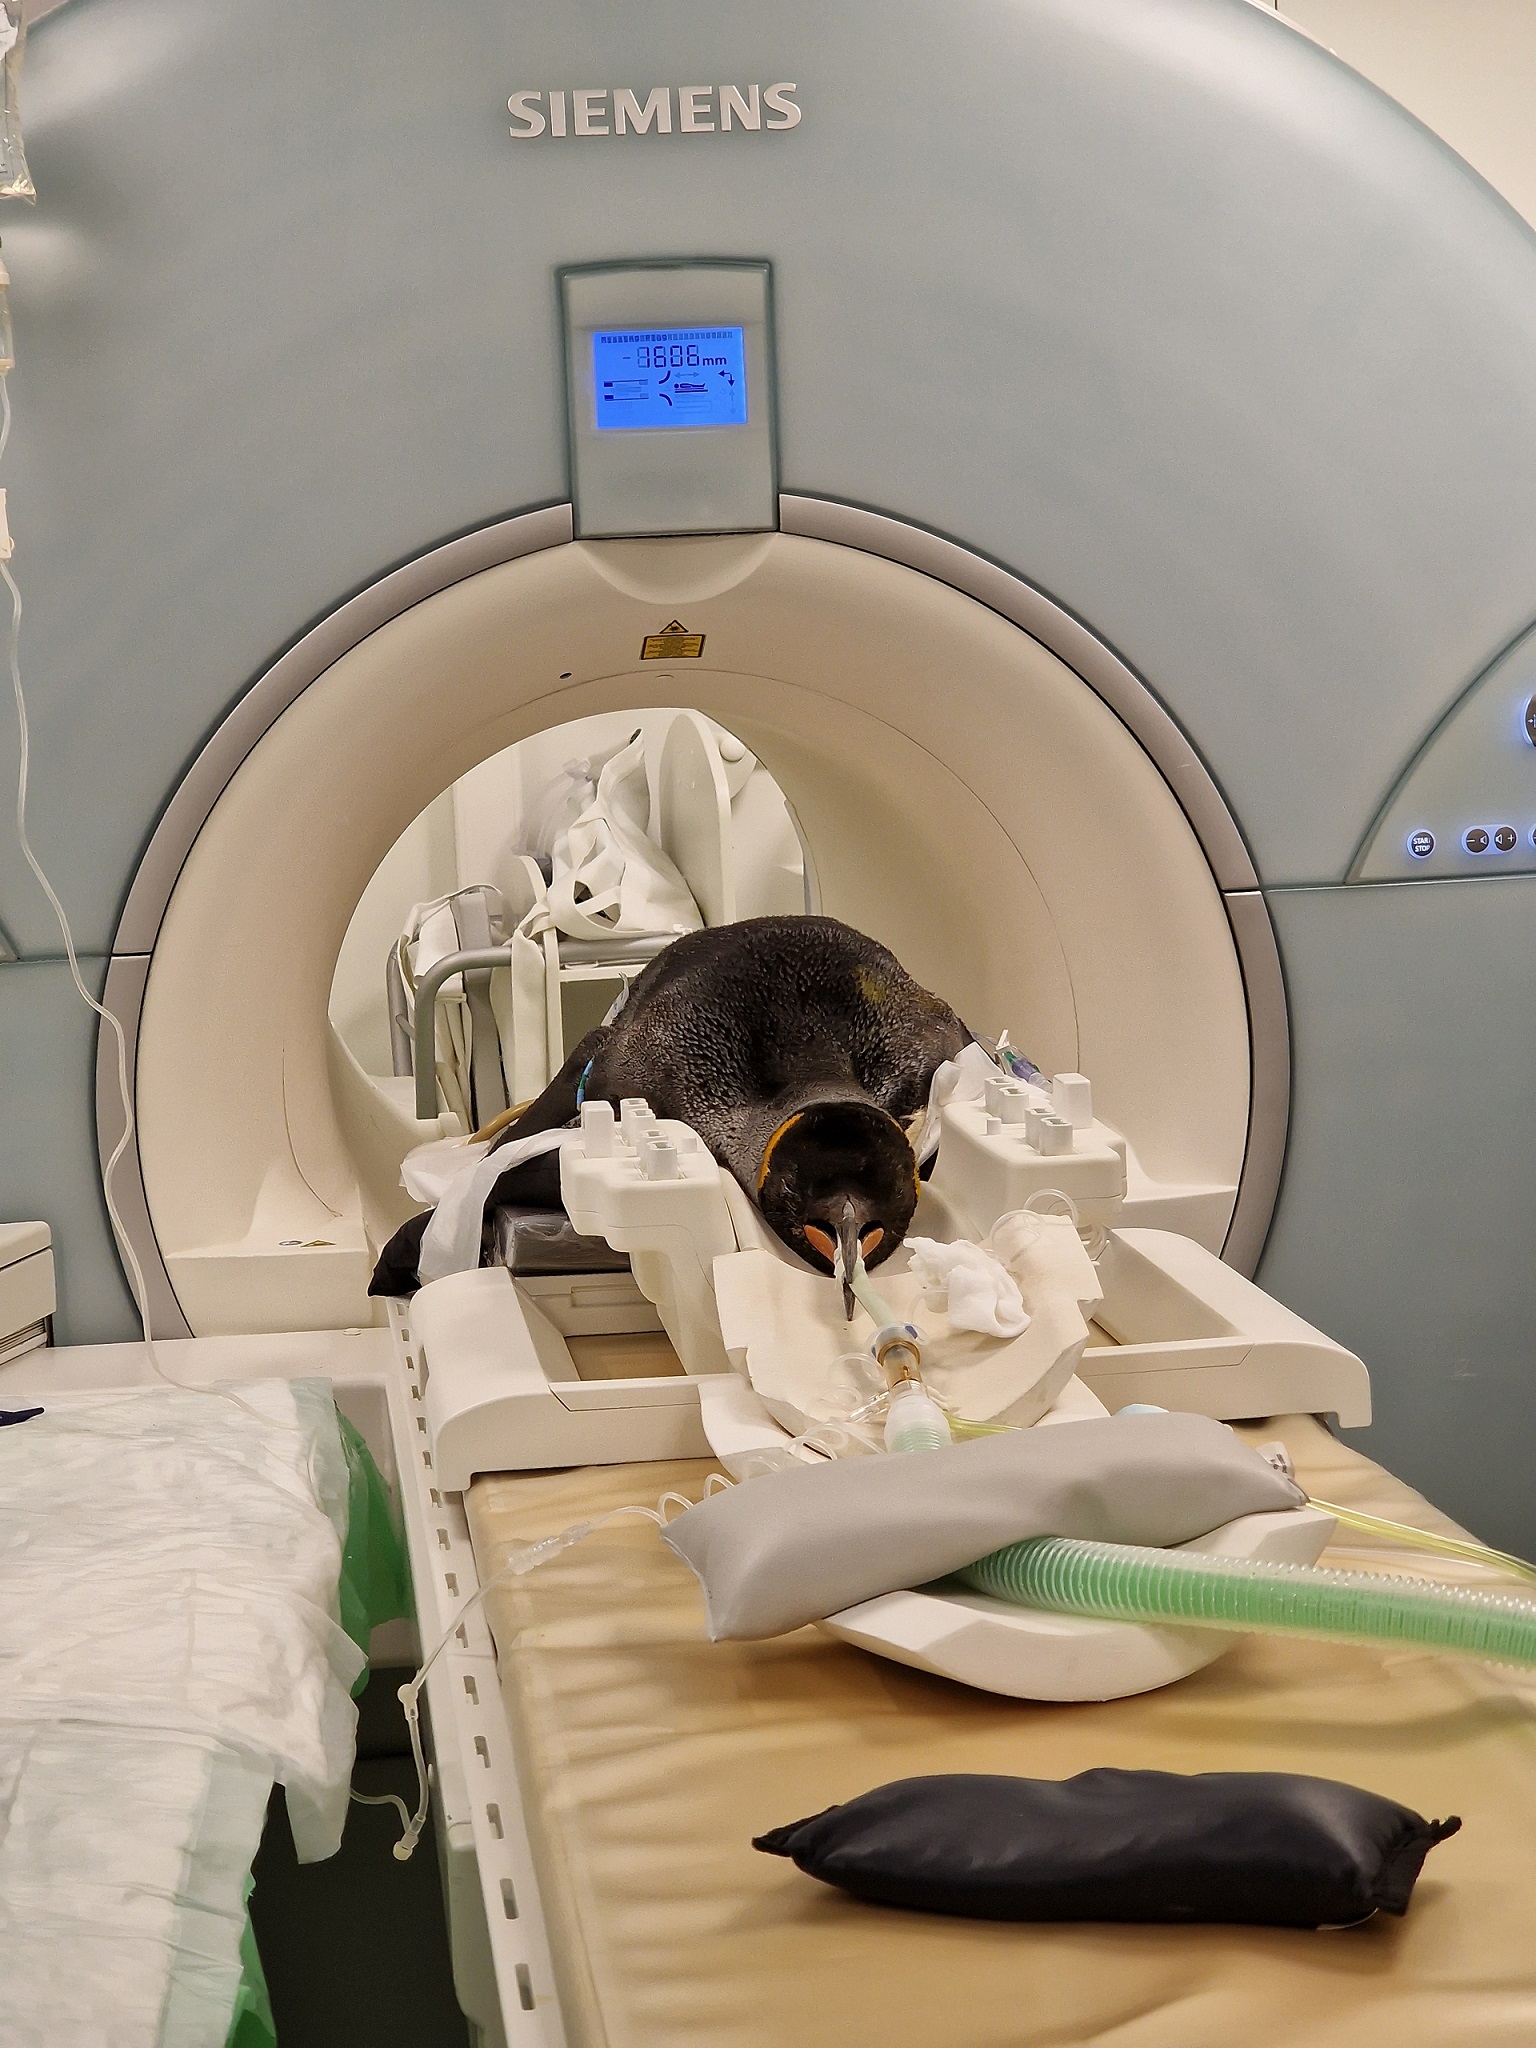 Alfie king penguin getting scan at the vet hospital

IMAGE: Steph Mota 2023